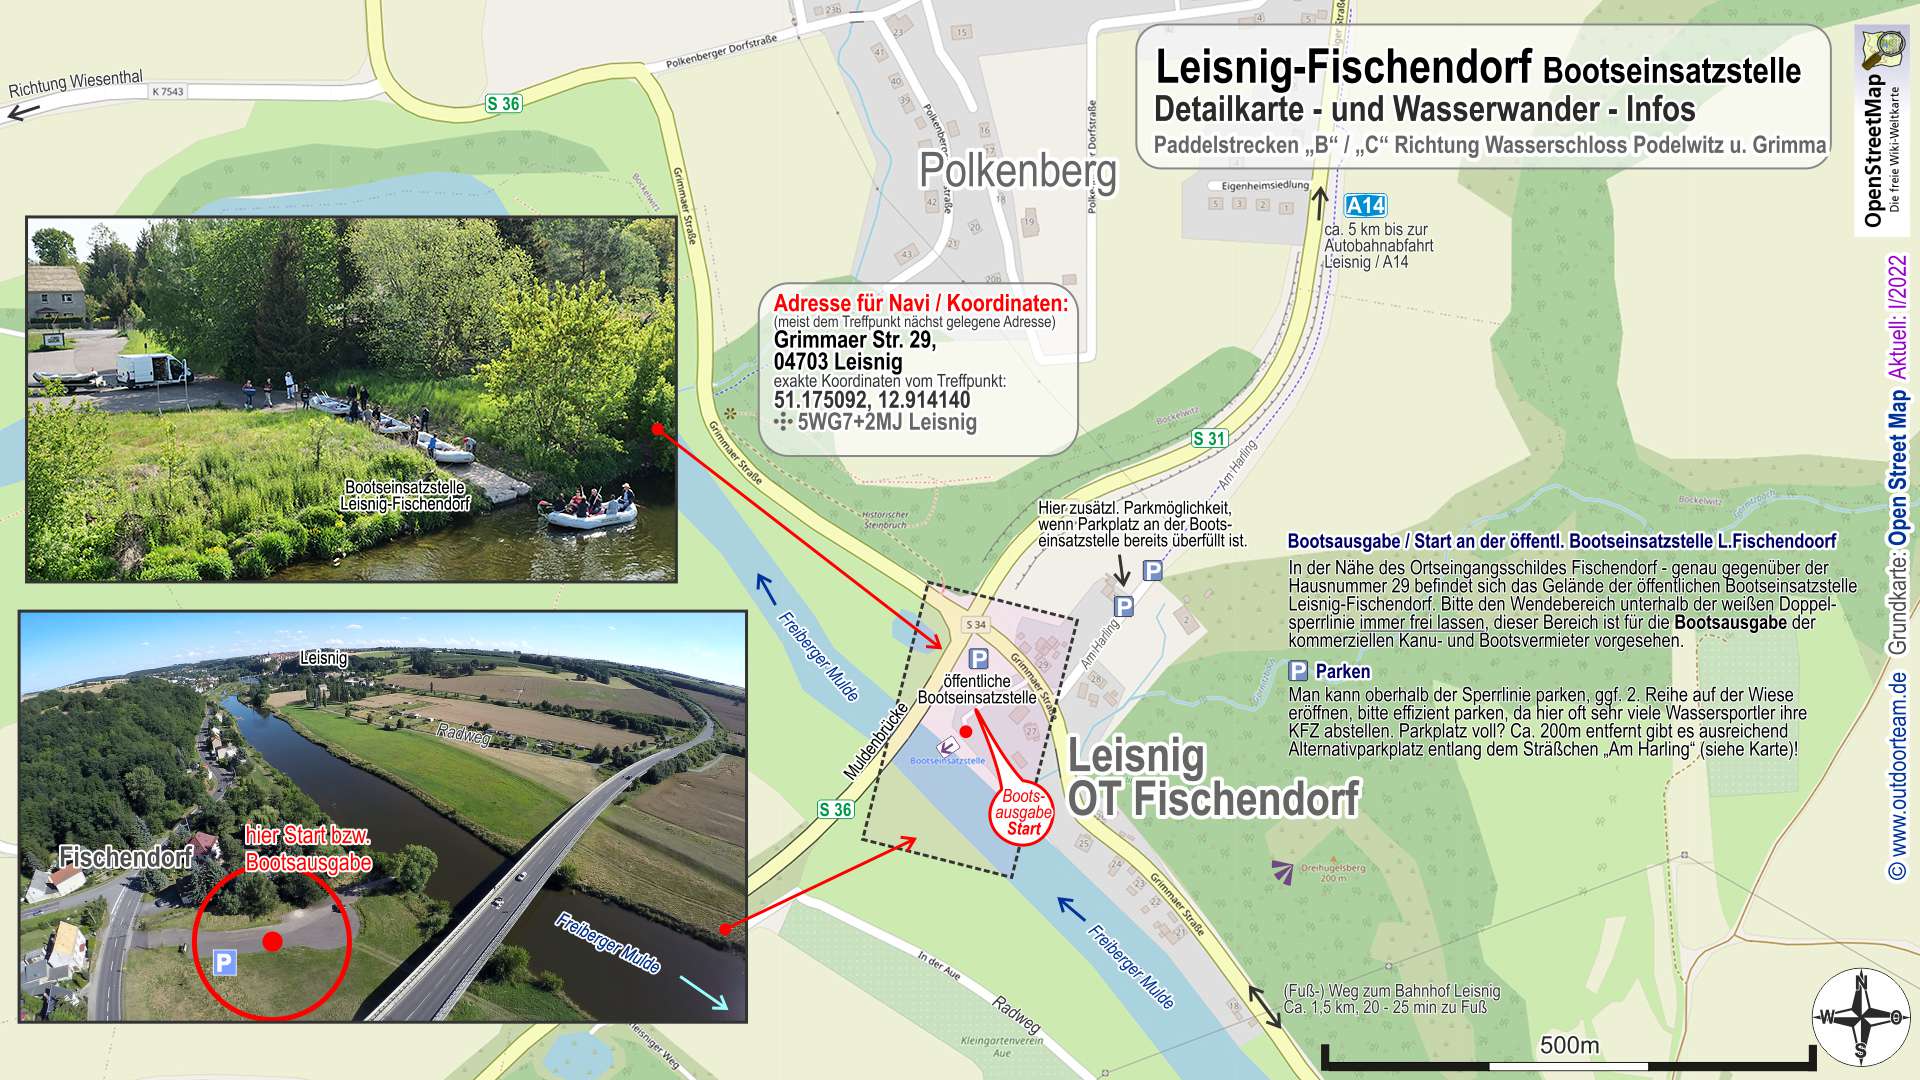 Detailkarte und Wasserwander-Info Bootseinstiegstelle Leisnig Fischendorf am Fluss Freiberger Mulde